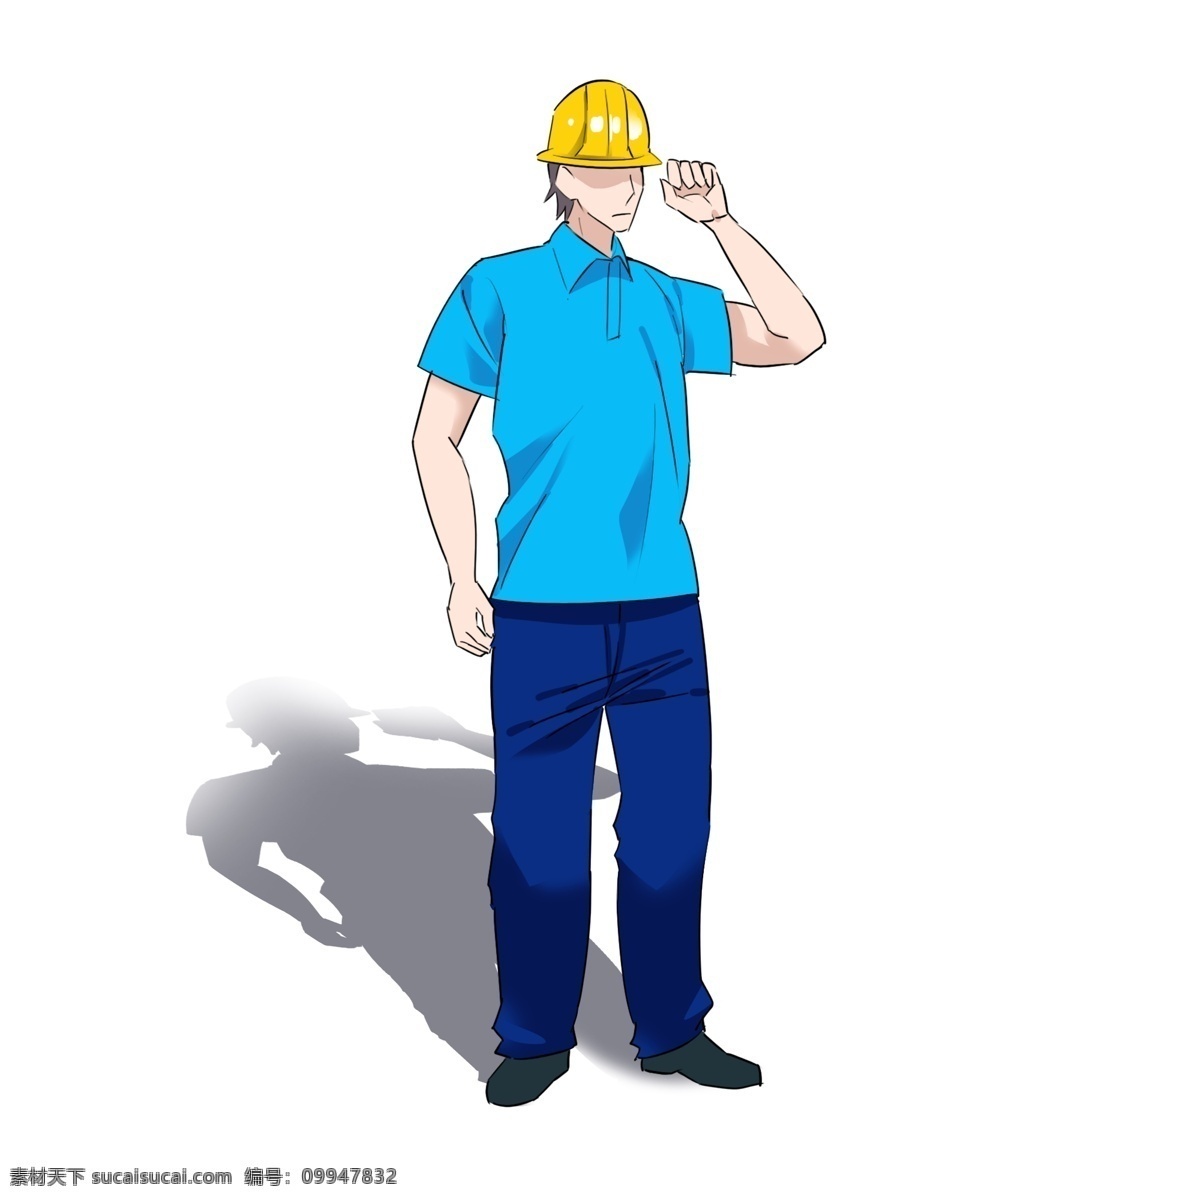 视察 工人 卡通 蓝 衬衫 安全帽 小黄帽 形象卡通 蓝衬衫 卡通形象 视察工人 形象 工人卡通